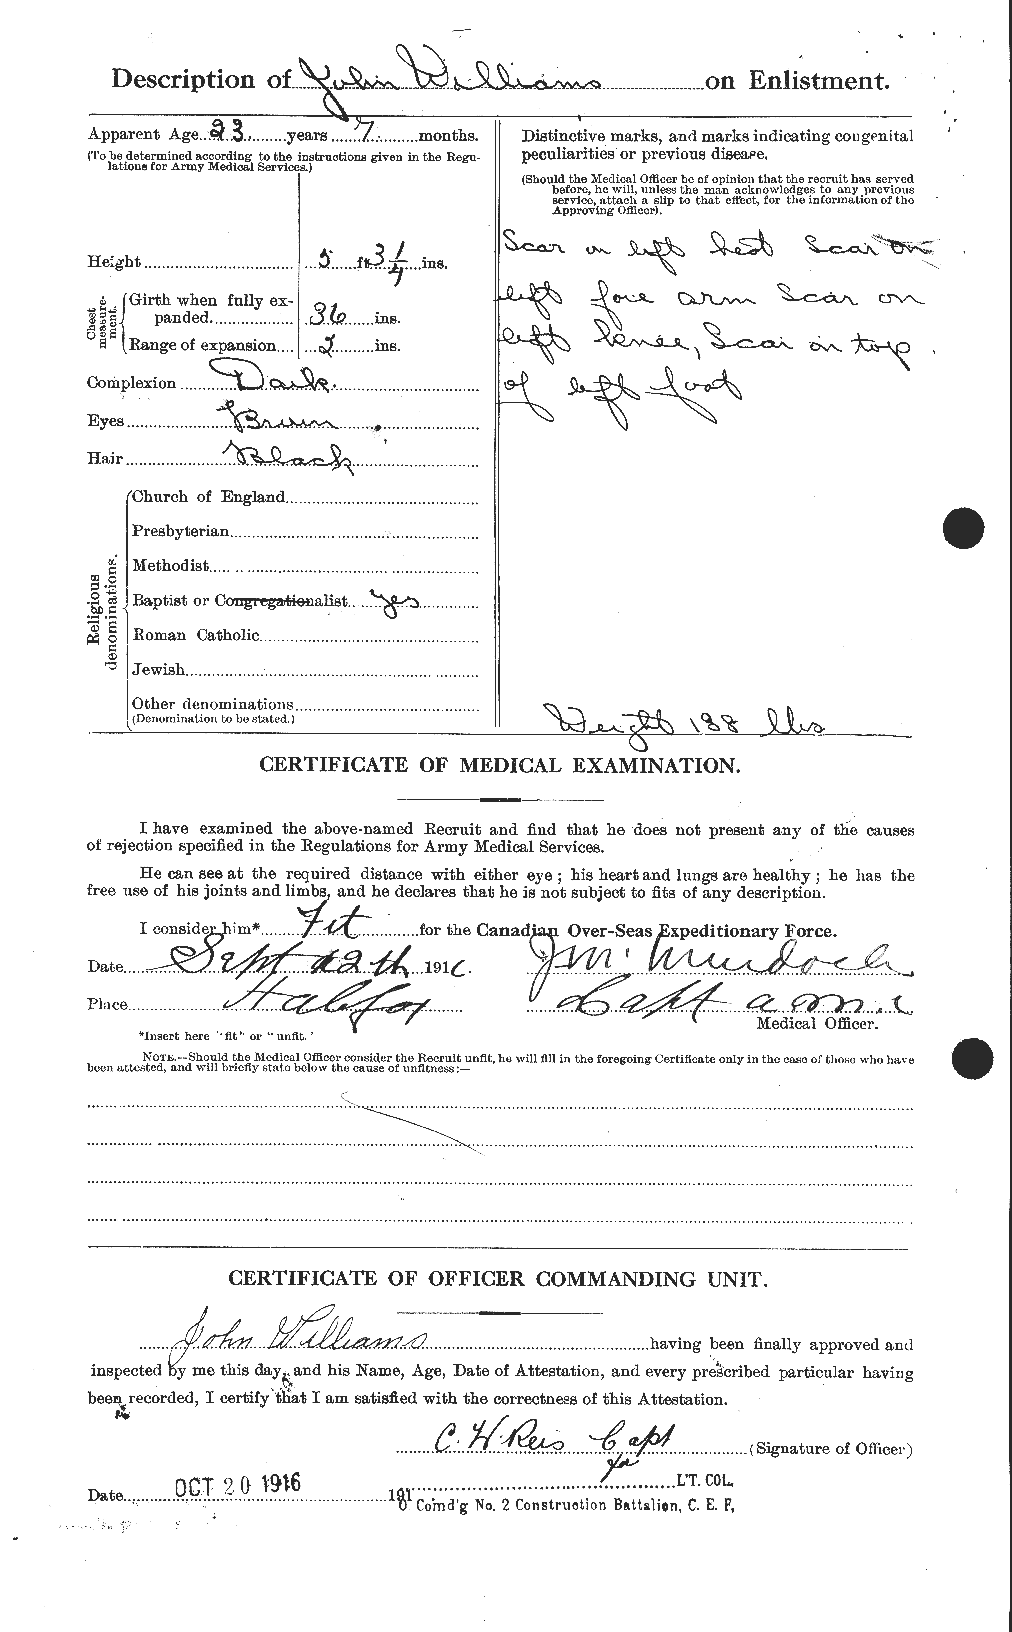 Dossiers du Personnel de la Première Guerre mondiale - CEC 672934b